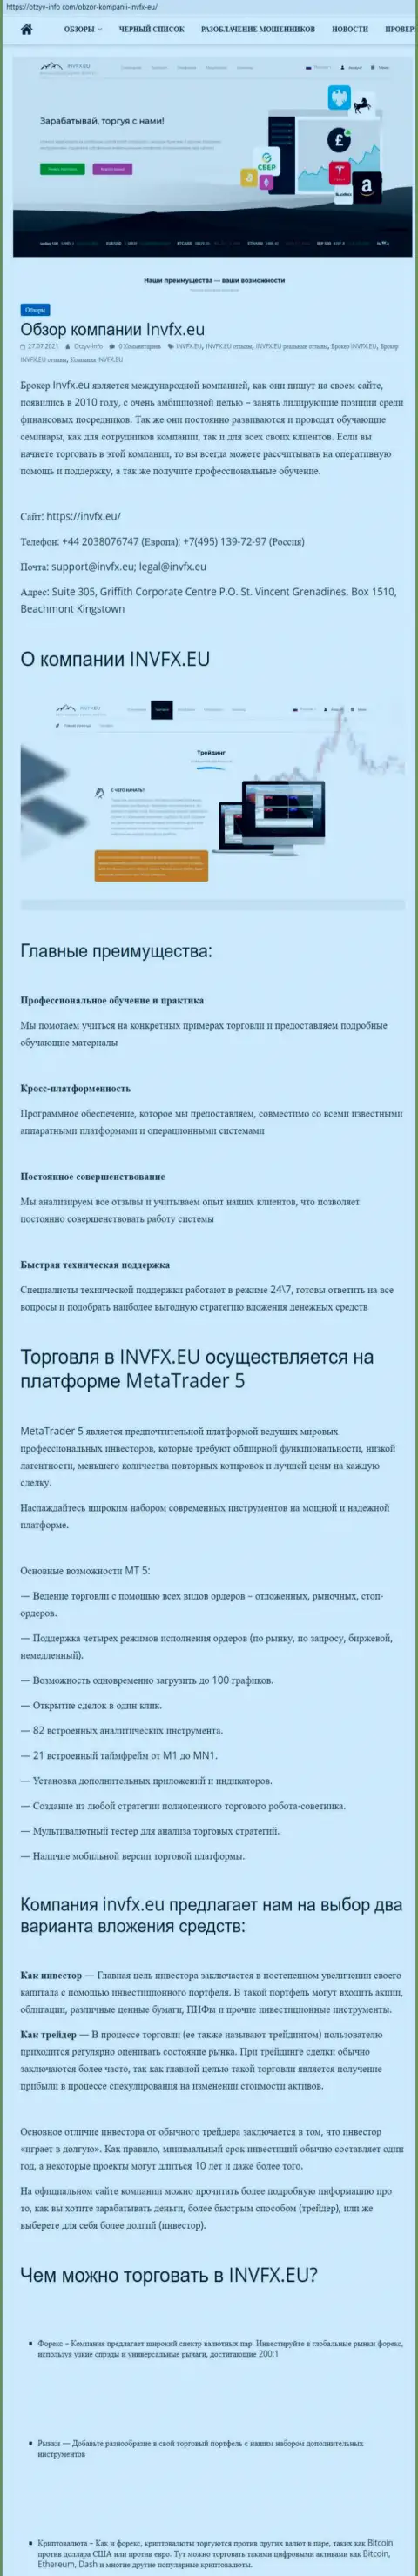 Web-портал otzyv info com разместил статью о ФОРЕКС-компании ИНВФИкс Еу